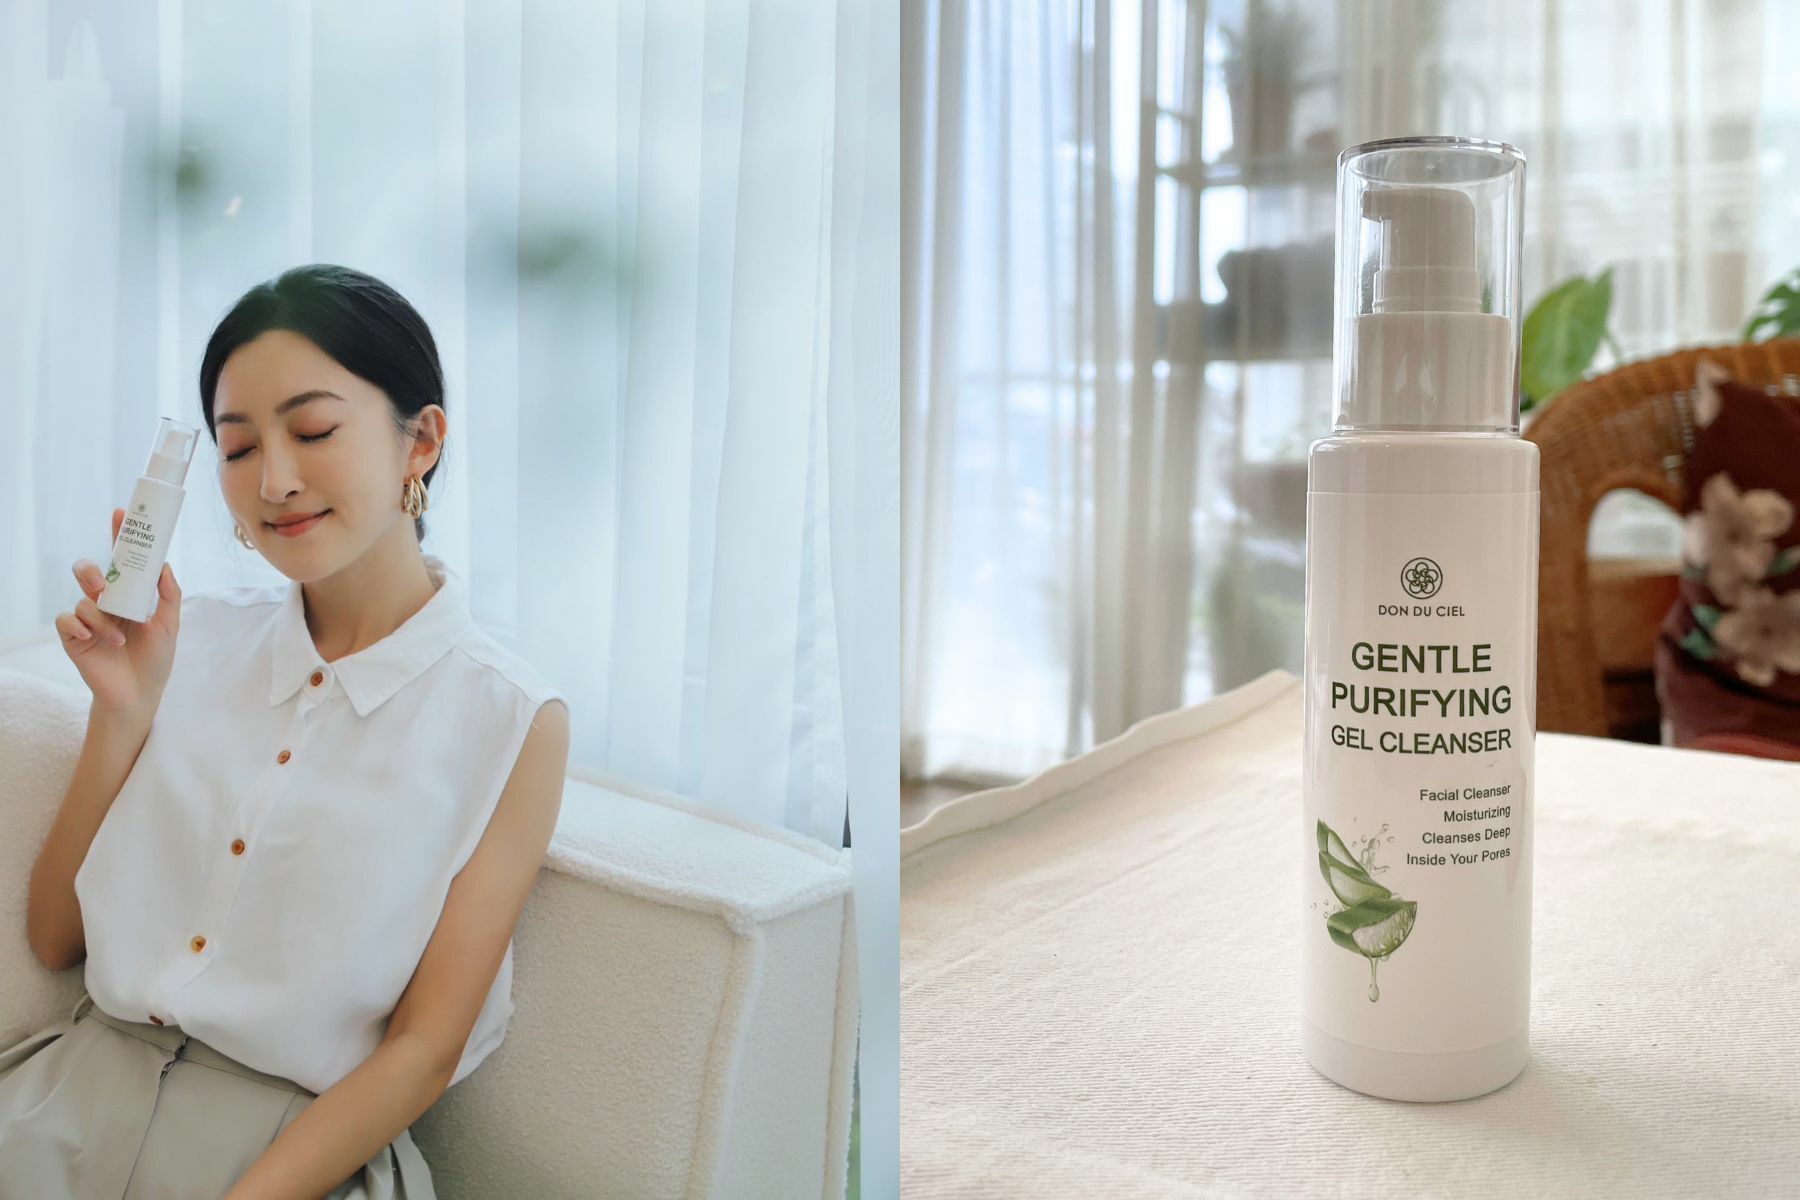 肌膚的清潔會是改善的最大關鍵，來自台灣璣園肌膚保養品牌《DON DU CIEL》保濕蘆薈潔膚凝露會是很好的選擇